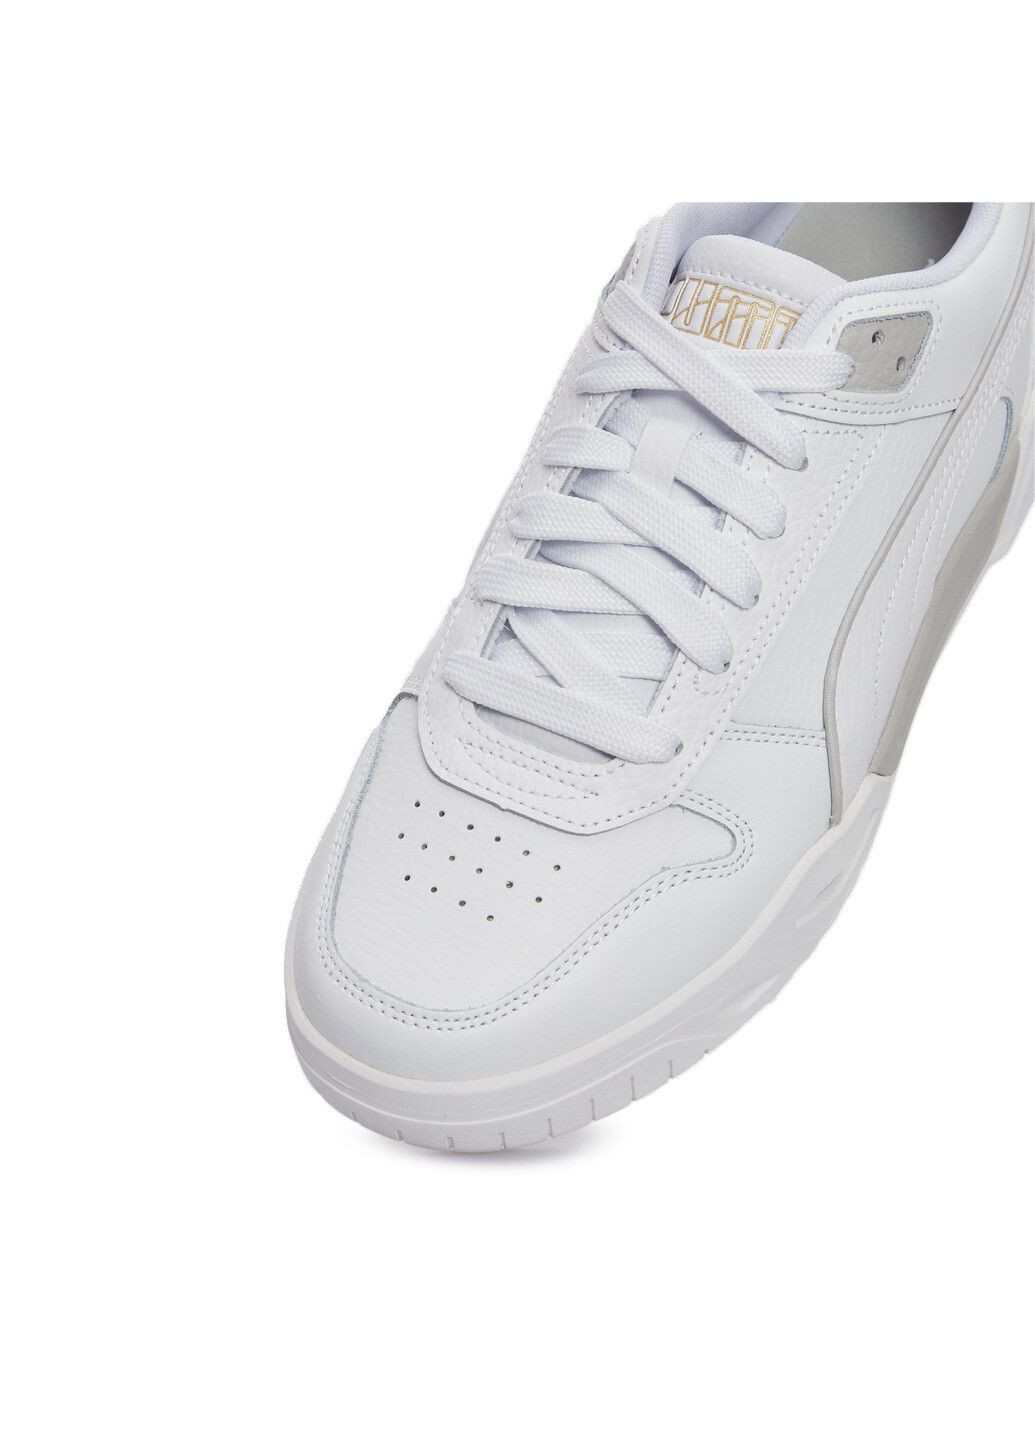 Белые всесезонные кеды rbd tech classic unisex sneakers Puma